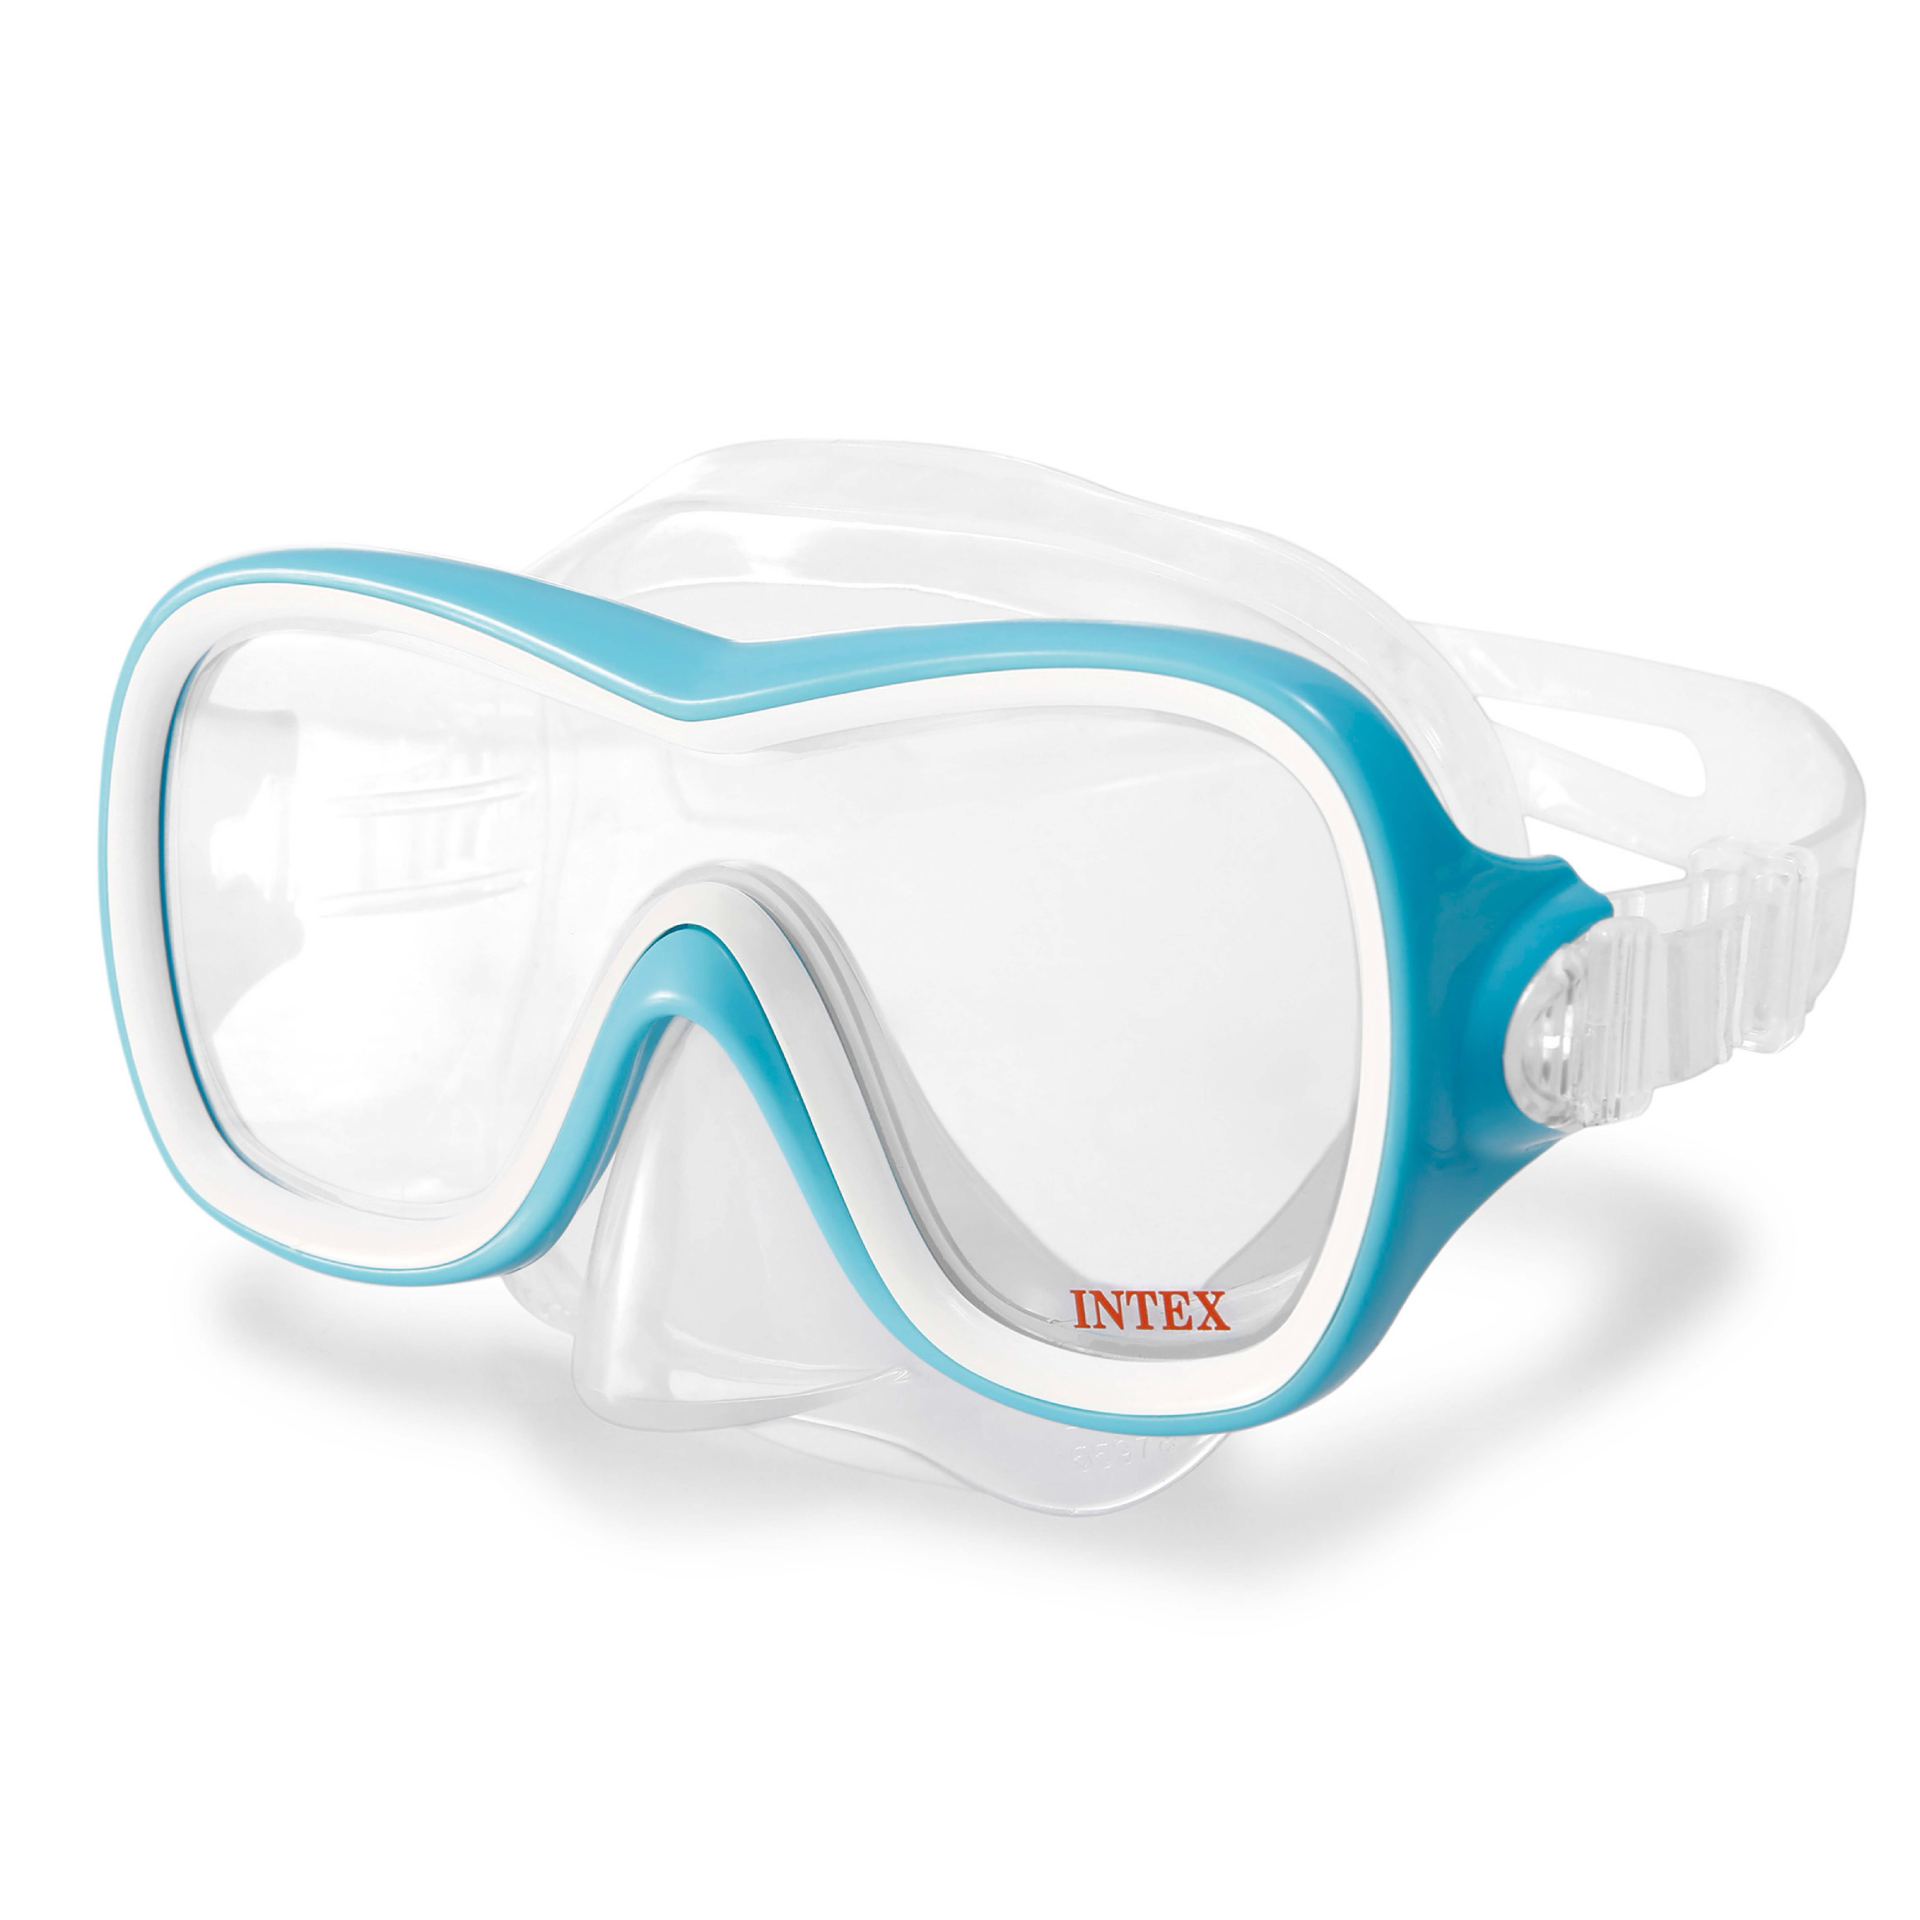 Intex wave rider masks - Blauw